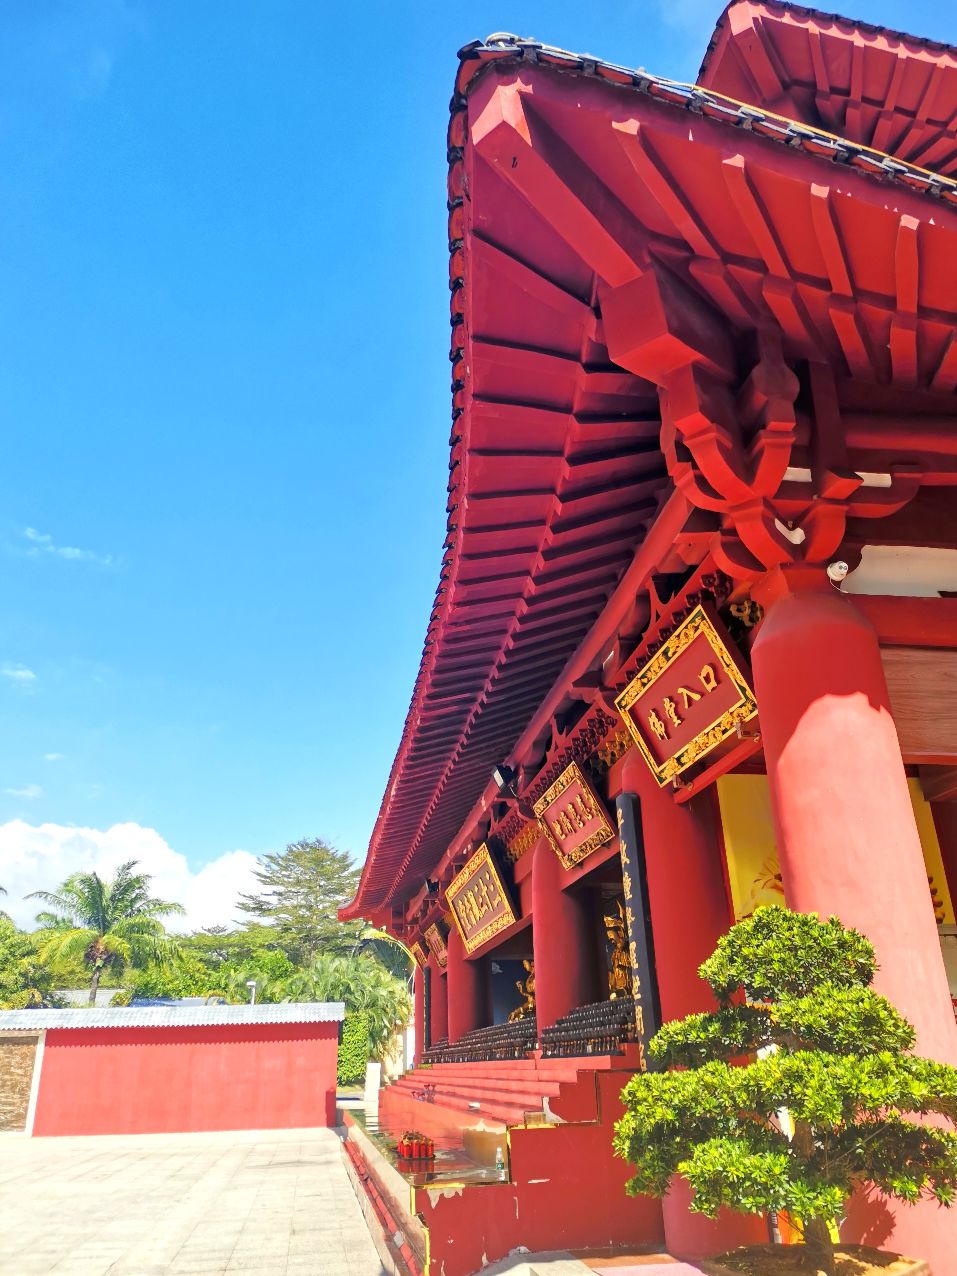 三十三观音堂位于三亚南山文化旅游区腹心处,是南海一带佛教丛林之一